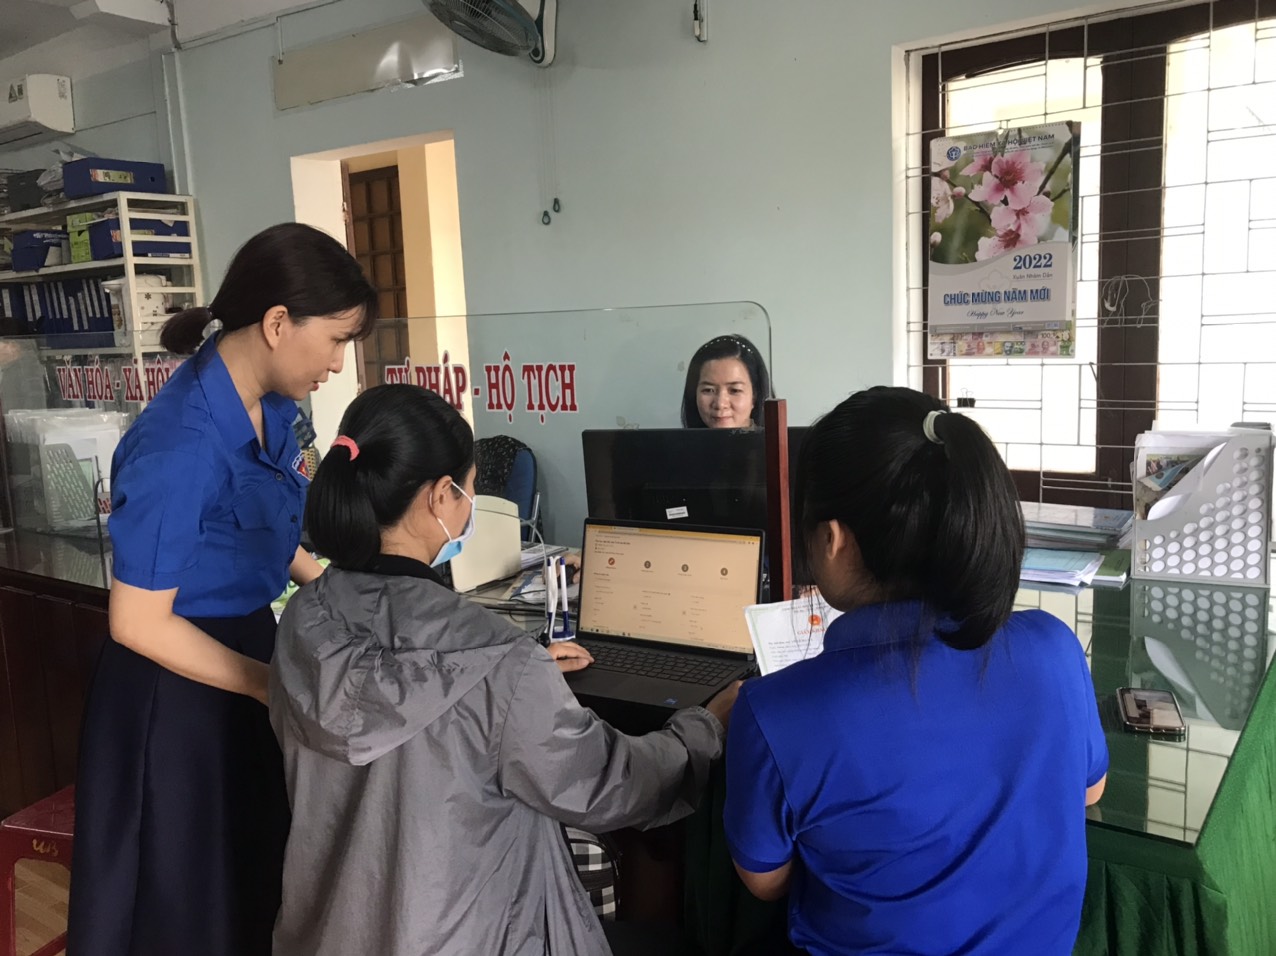 UBND thị trấn La Hà, huyện Tư Nghĩa - điểm sáng trong triển khai dịch vụ công trực tuyến